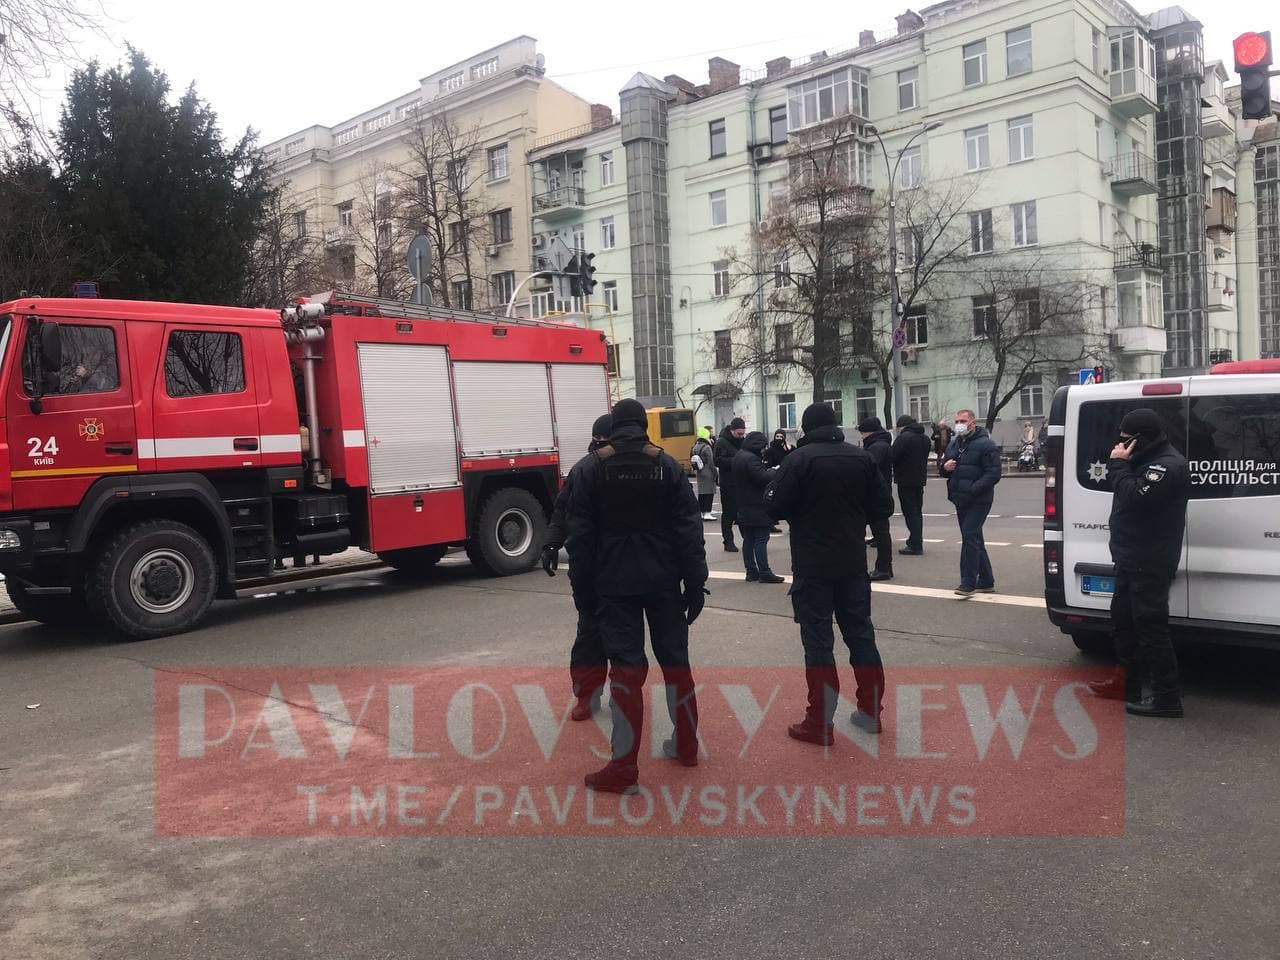 Поліція охороняє порядок у центрі Києва. Фото: PavlovskyNews